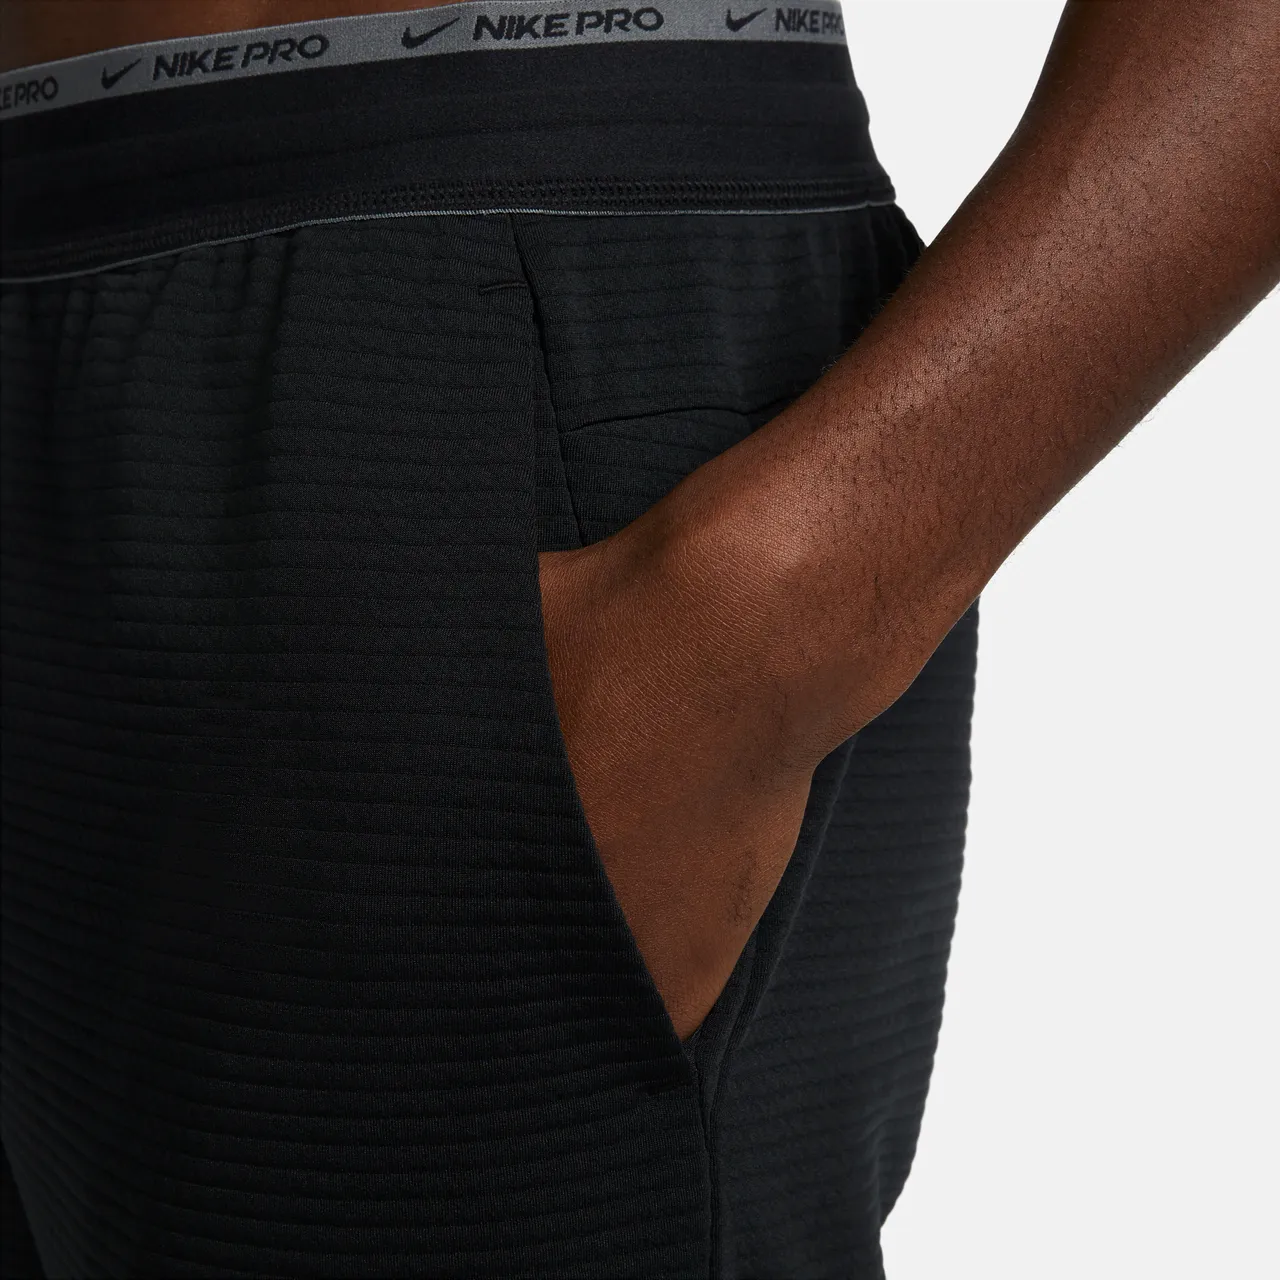 Nike Dri-FIT fitnessbroek van fleece voor heren - Zwart